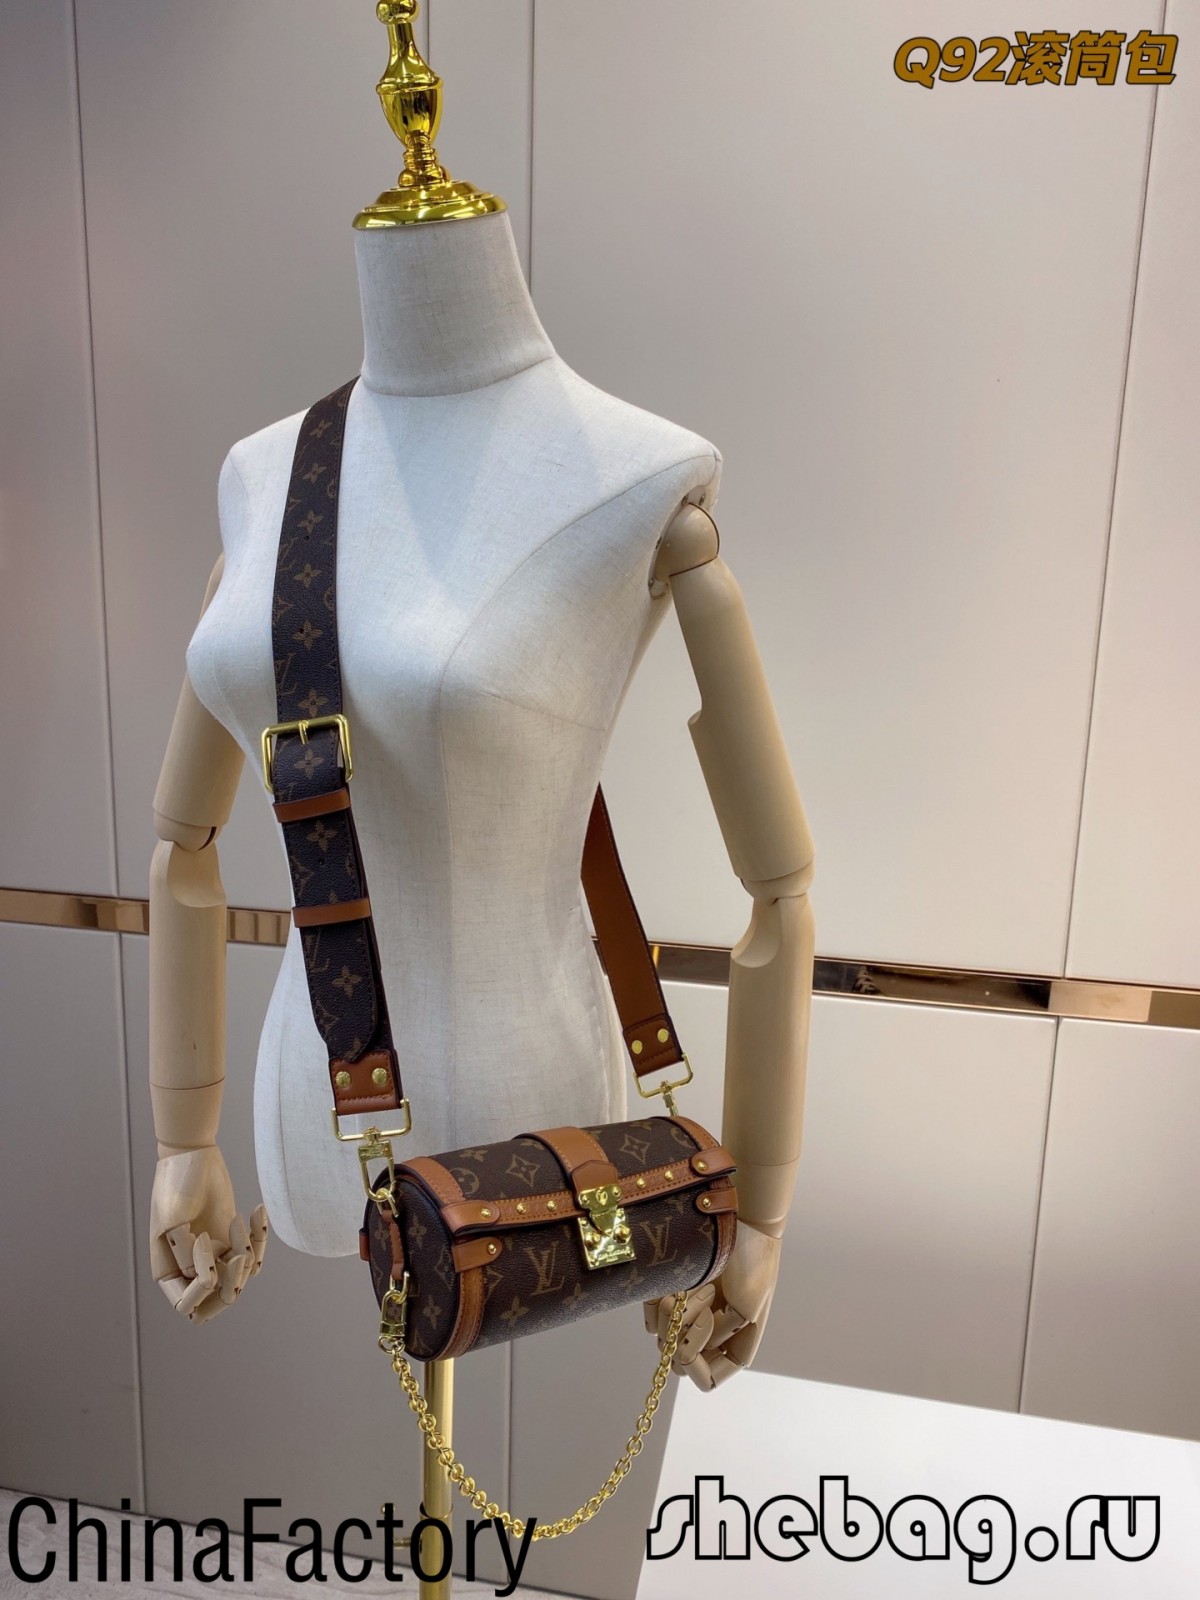 Репліка сумки Louis Vuitton вищої якості Китайська фабрика: LV Papillon Trunk (2022 Hottest) - Інтернет-магазин підробленої сумки Louis Vuitton найкращої якості, копія дизайнерської сумки ru